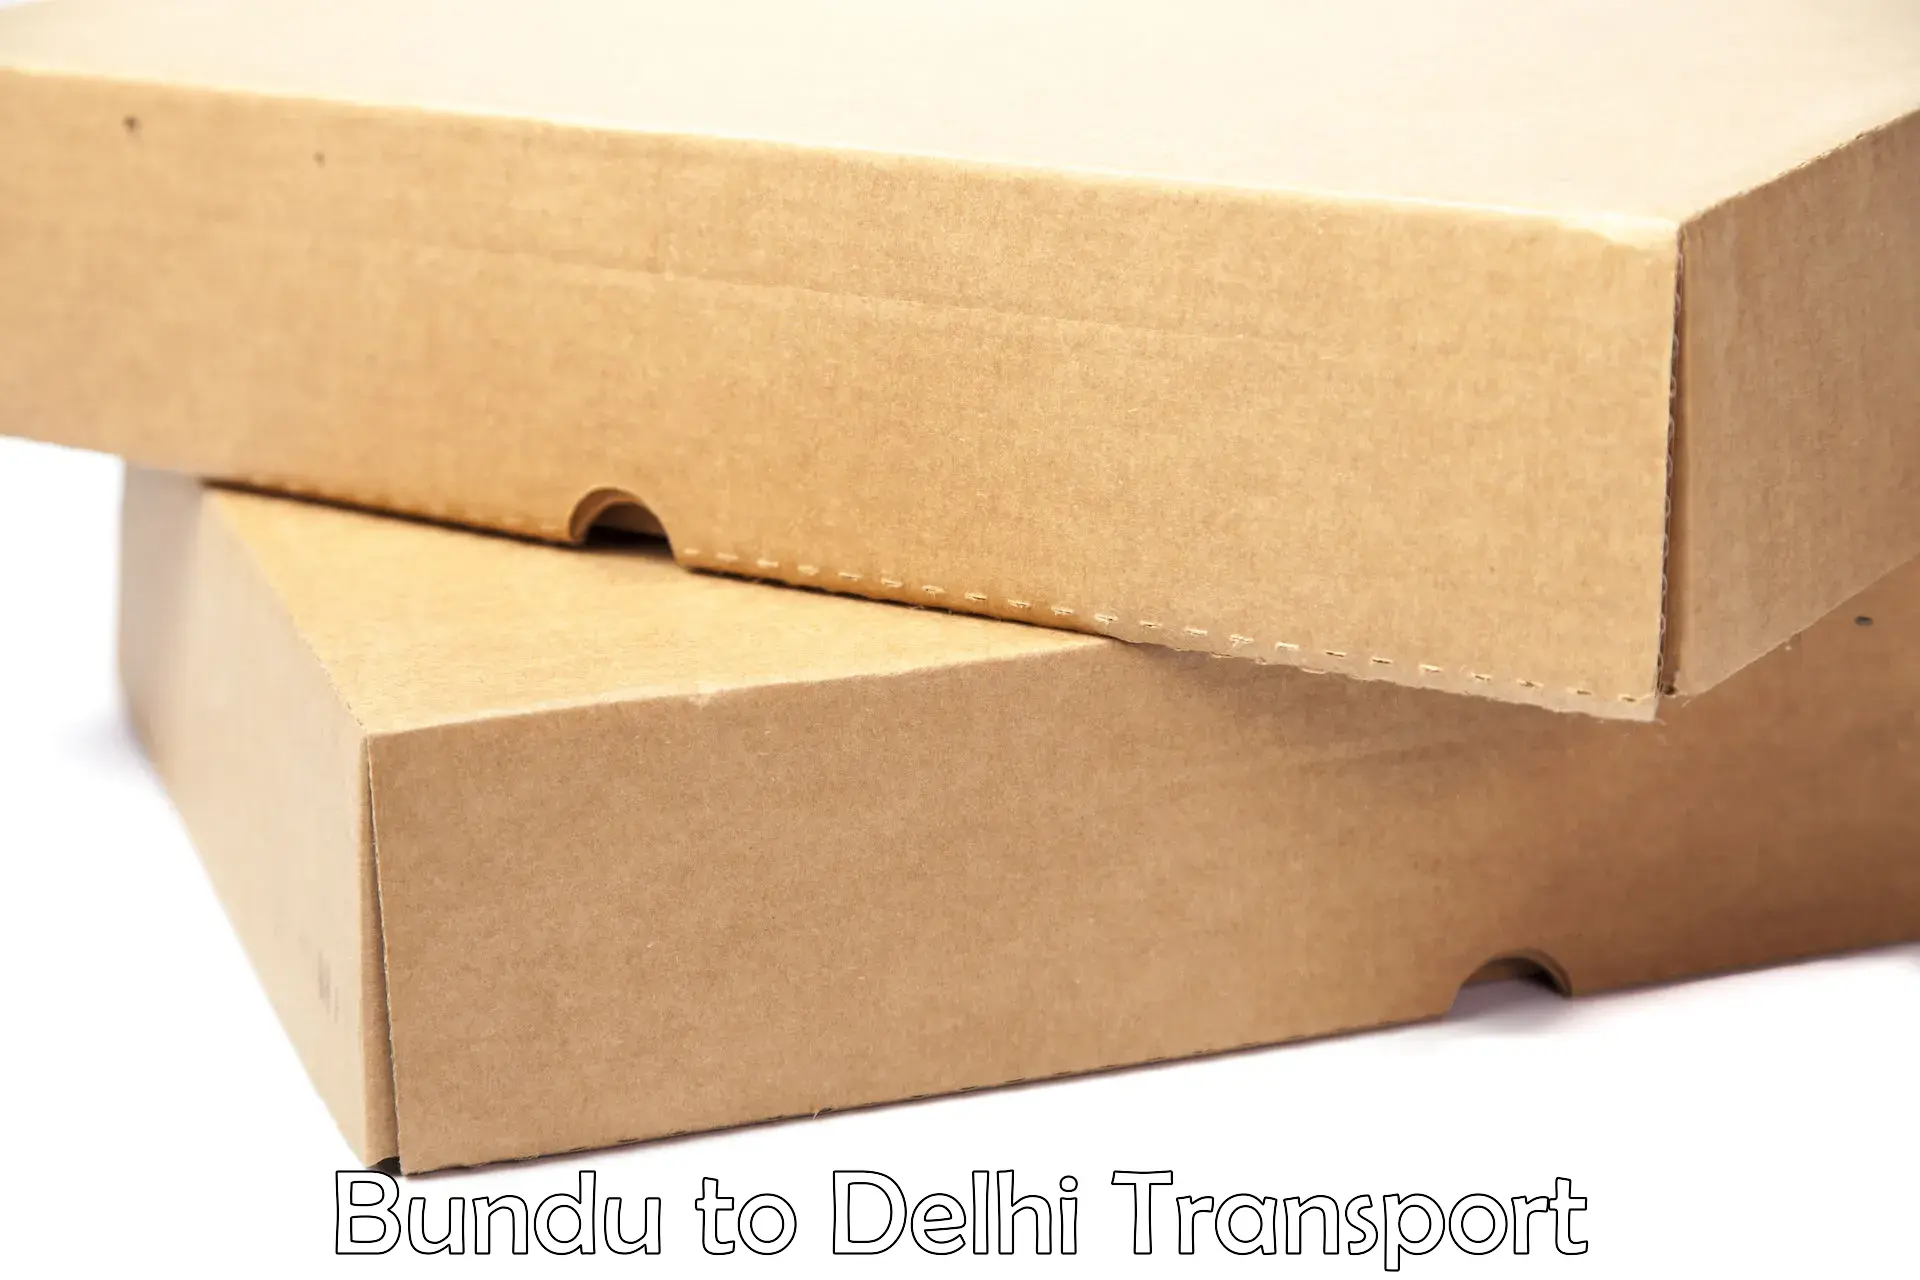 Truck transport companies in India in Bundu to Naraina Industrial Estate